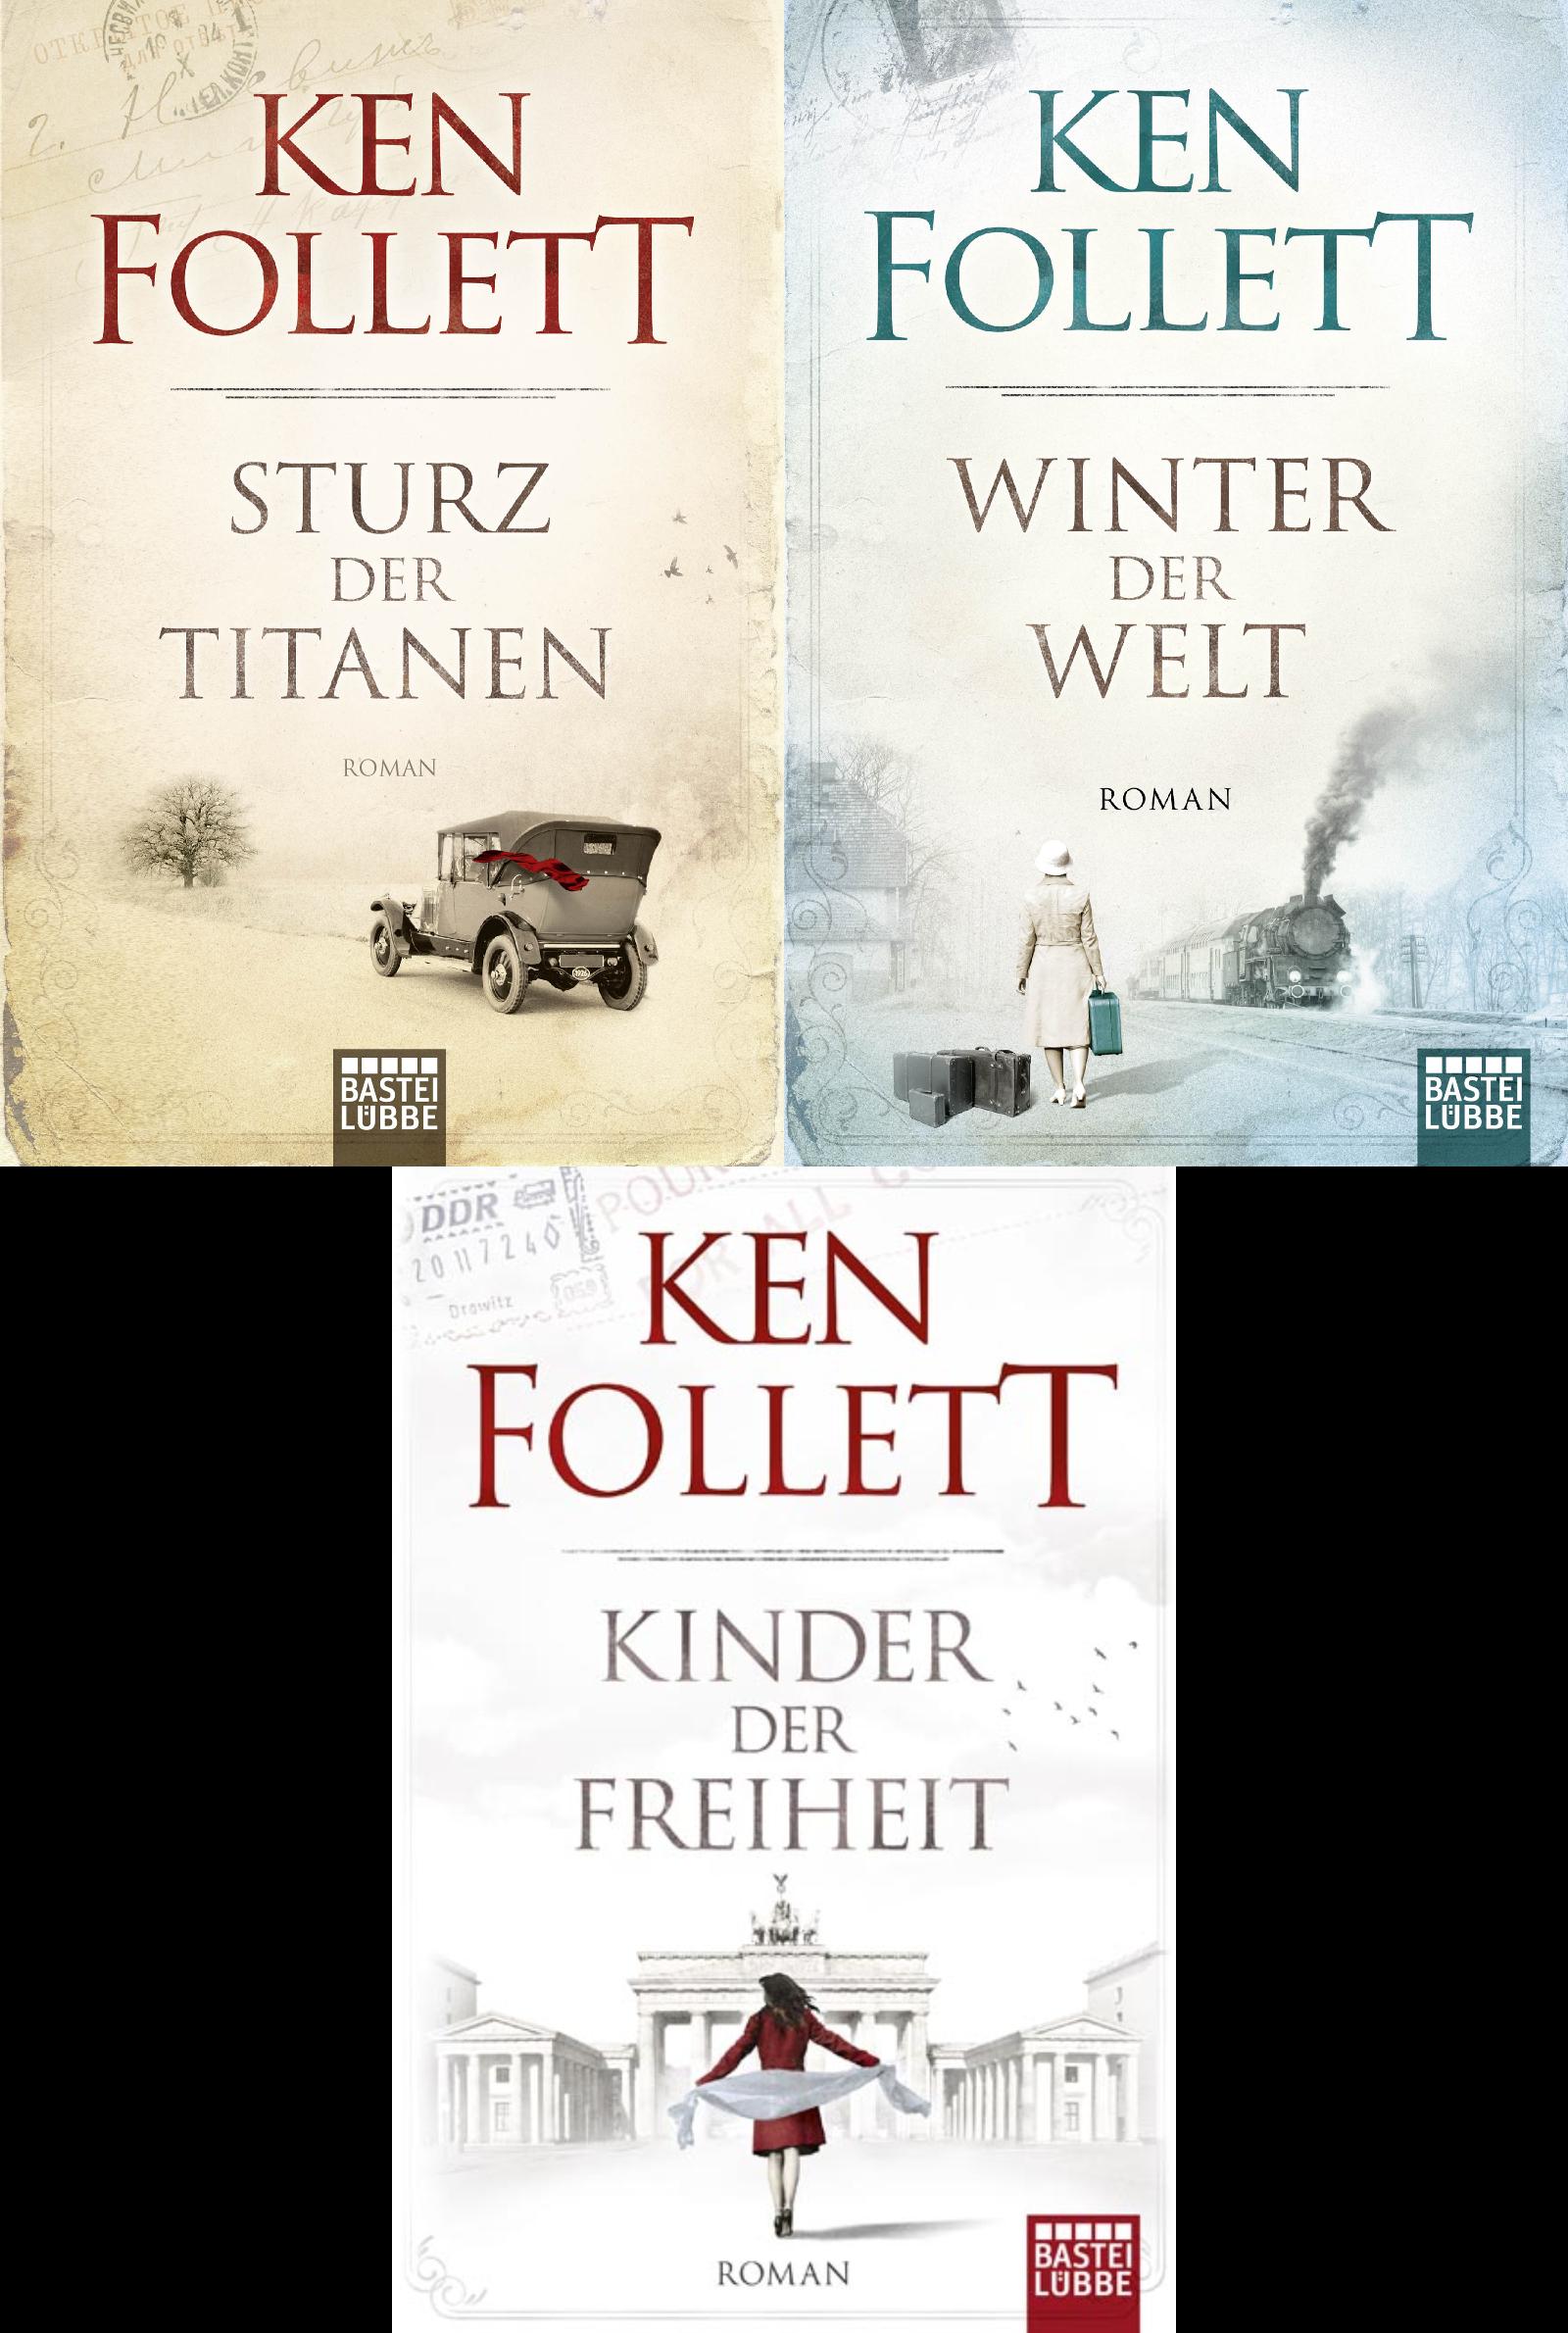 Ken Follett, Sturz der Titanen, Winter der Welt, Kinder der Freiheit - Bild 1 von 1